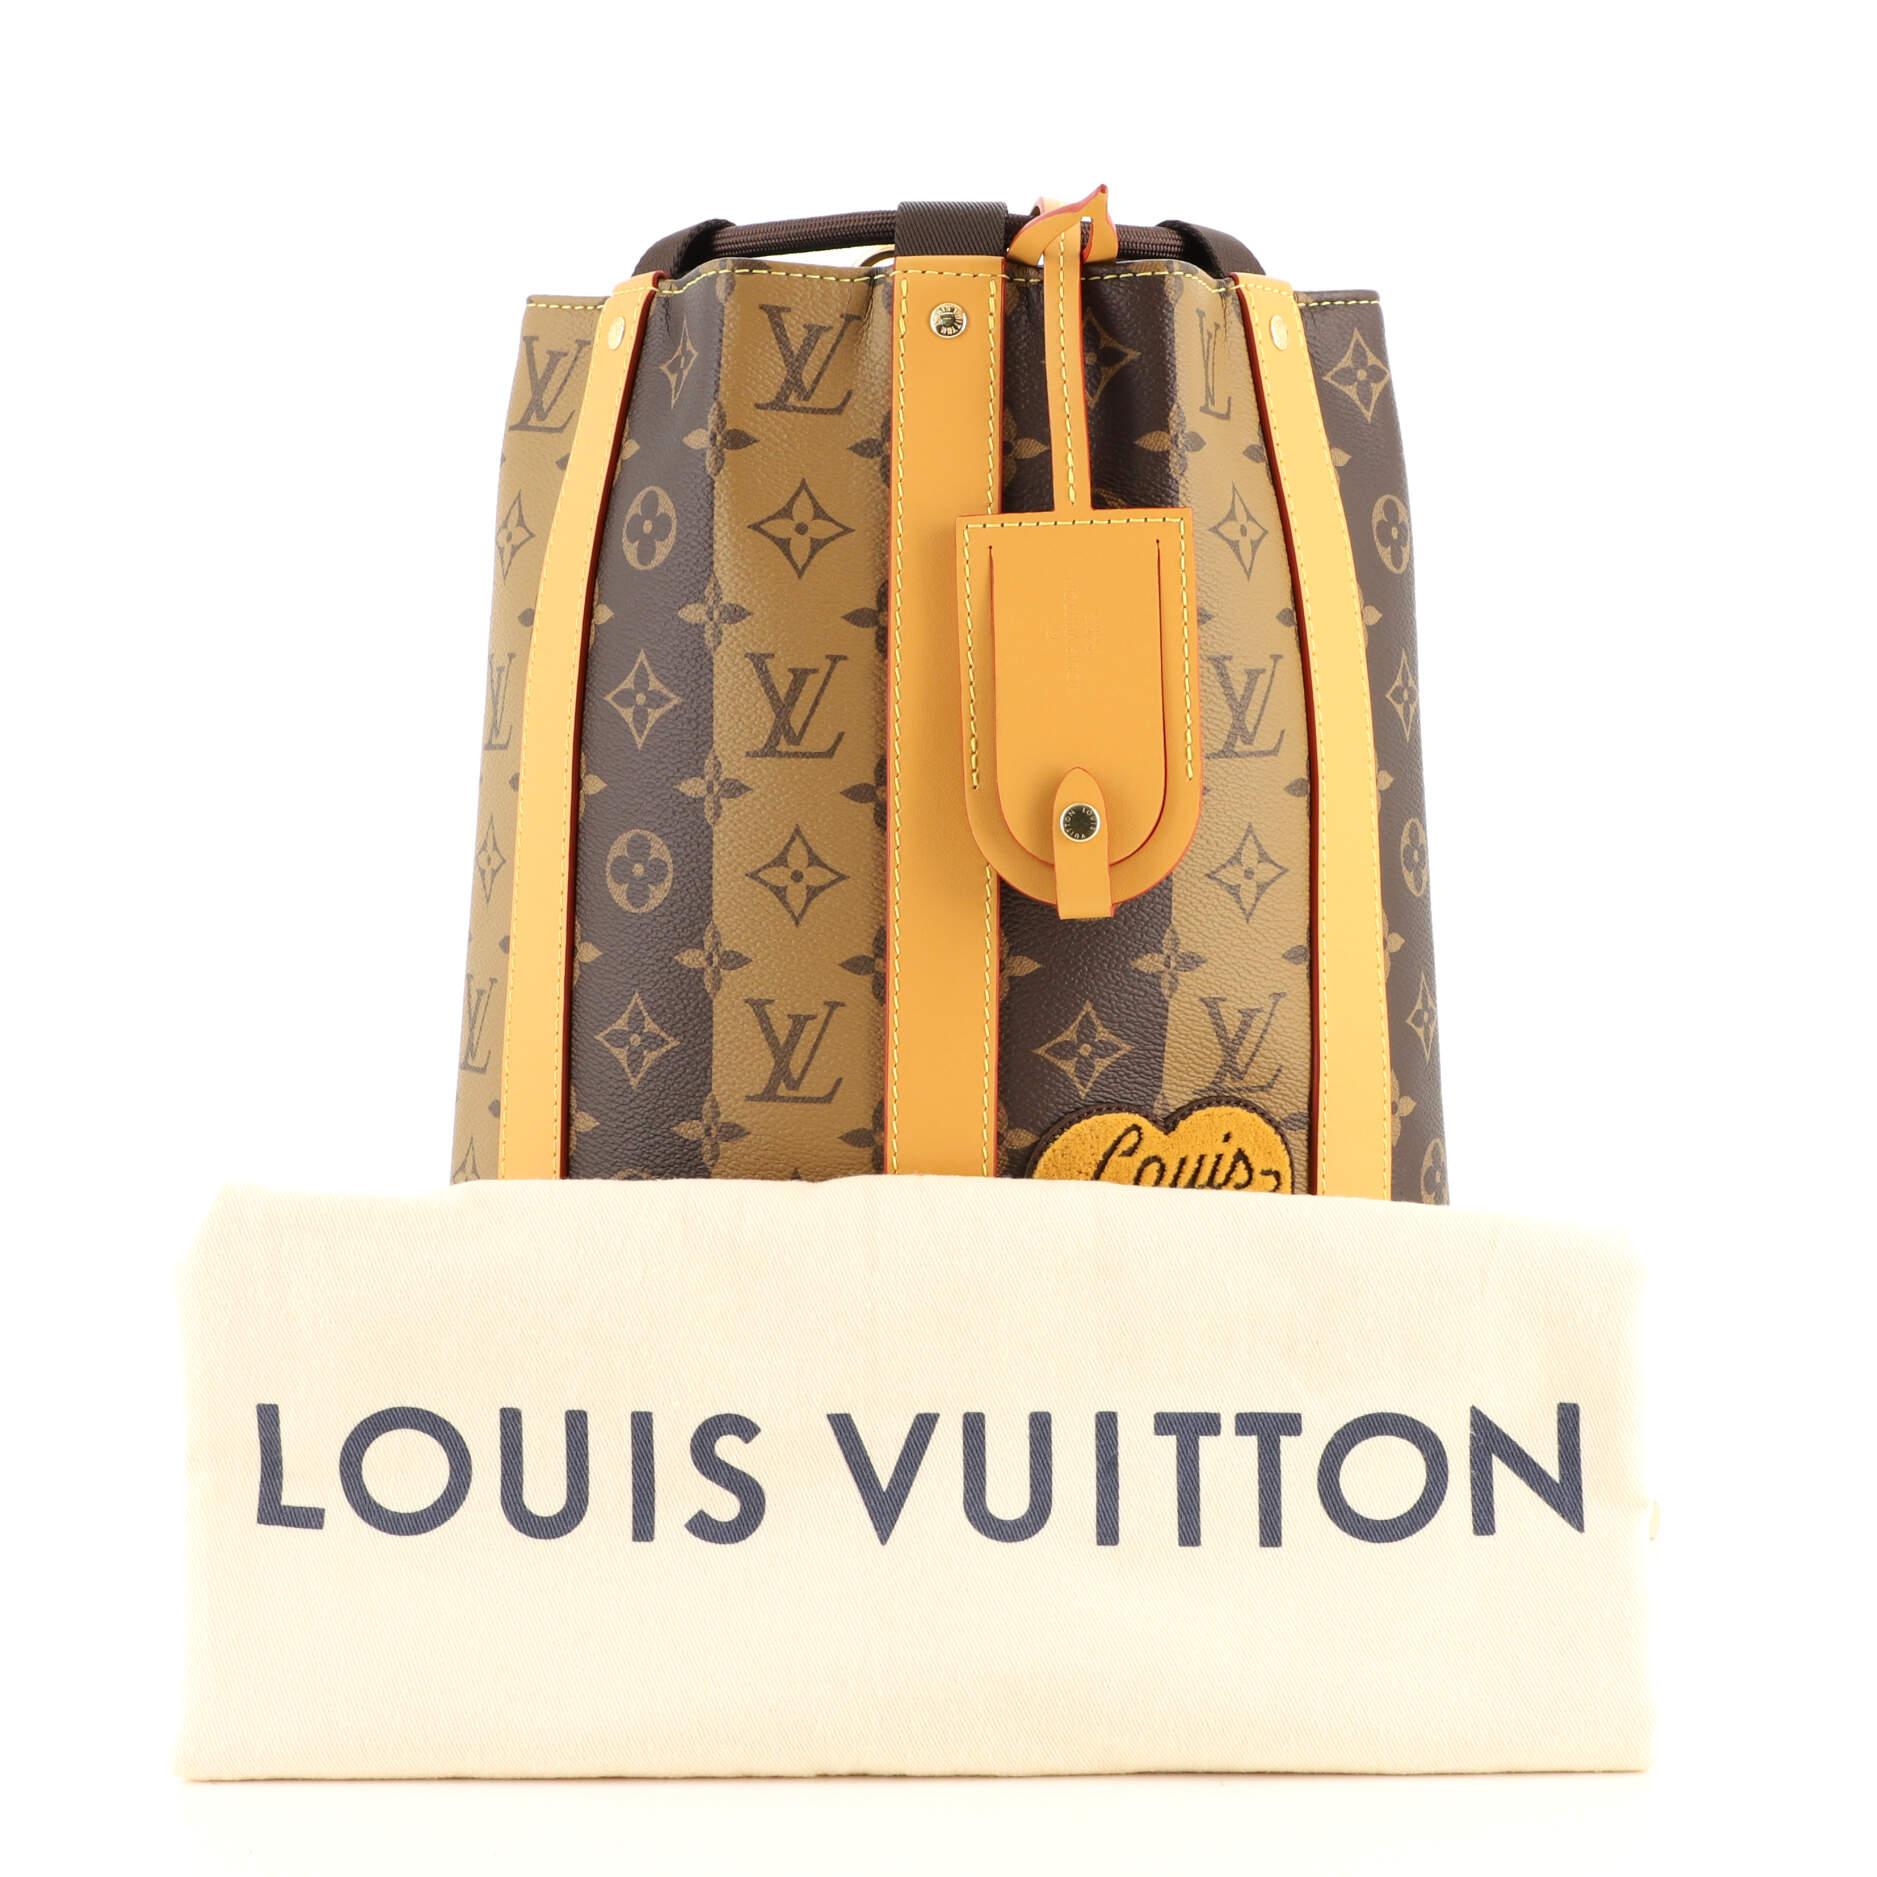 Louis Vuitton Virgil Abloh Nigo Brown Monogram Striped Coated Canvas Flap Double Phone Pouch Gold Hardware, 2021, Handbag